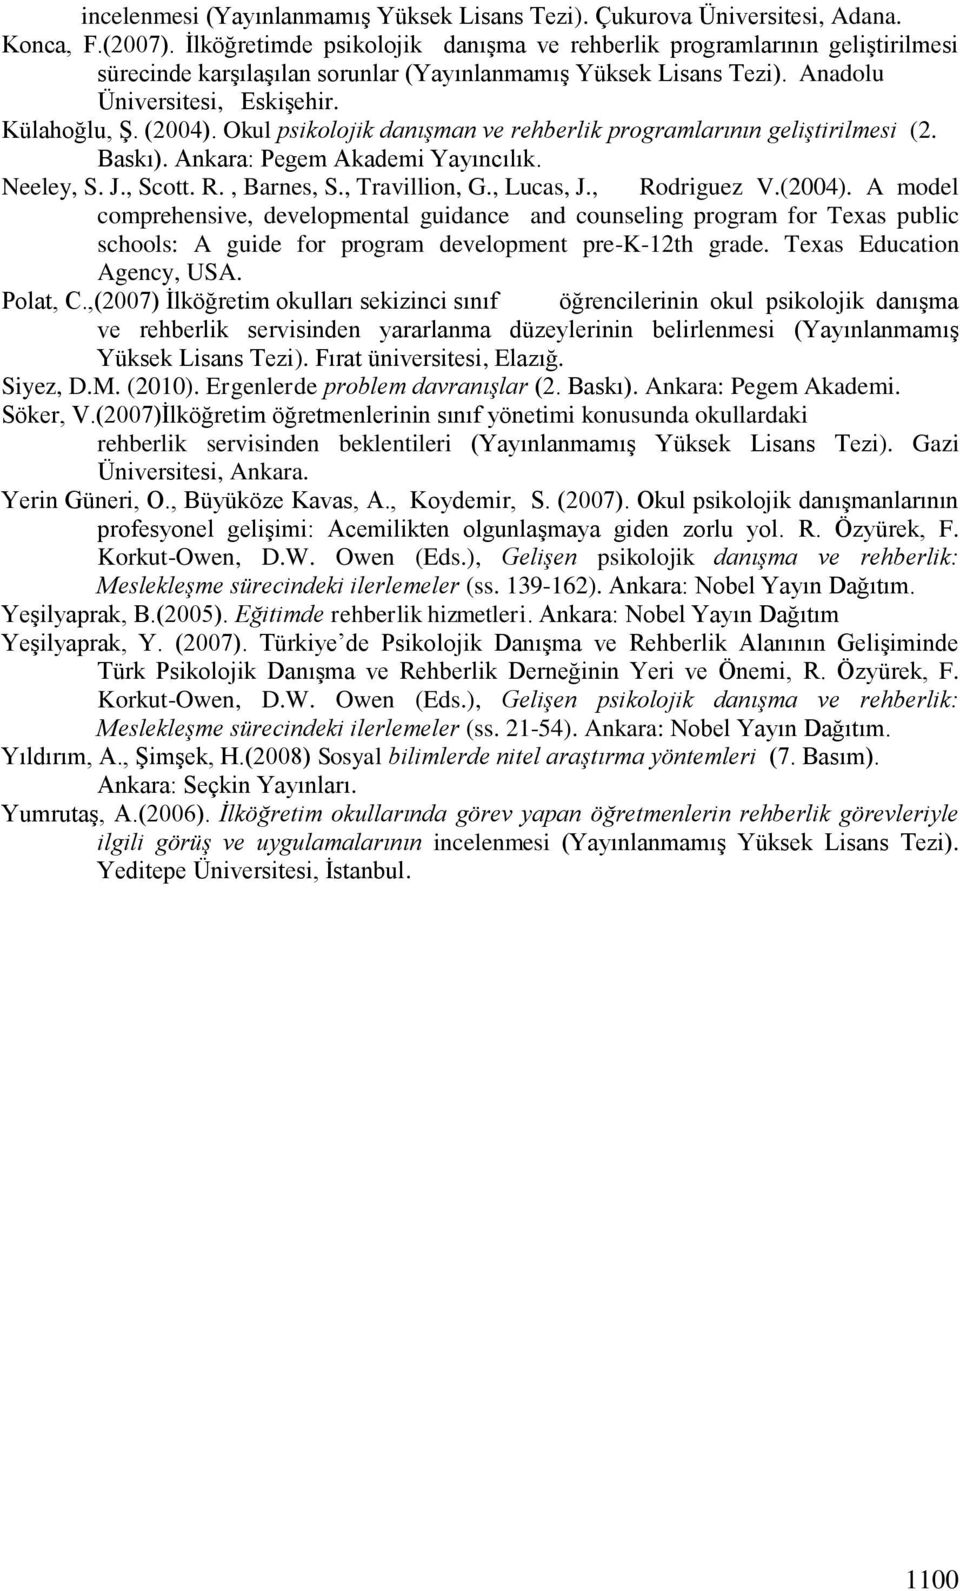 Okul psikolojik danışman ve rehberlik programlarının geliştirilmesi (2. Baskı). Ankara: Pegem Akademi Yayıncılık. Neeley, S. J., Scott. R., Barnes, S., Travillion, G., Lucas, J., Rodriguez V.(2004).